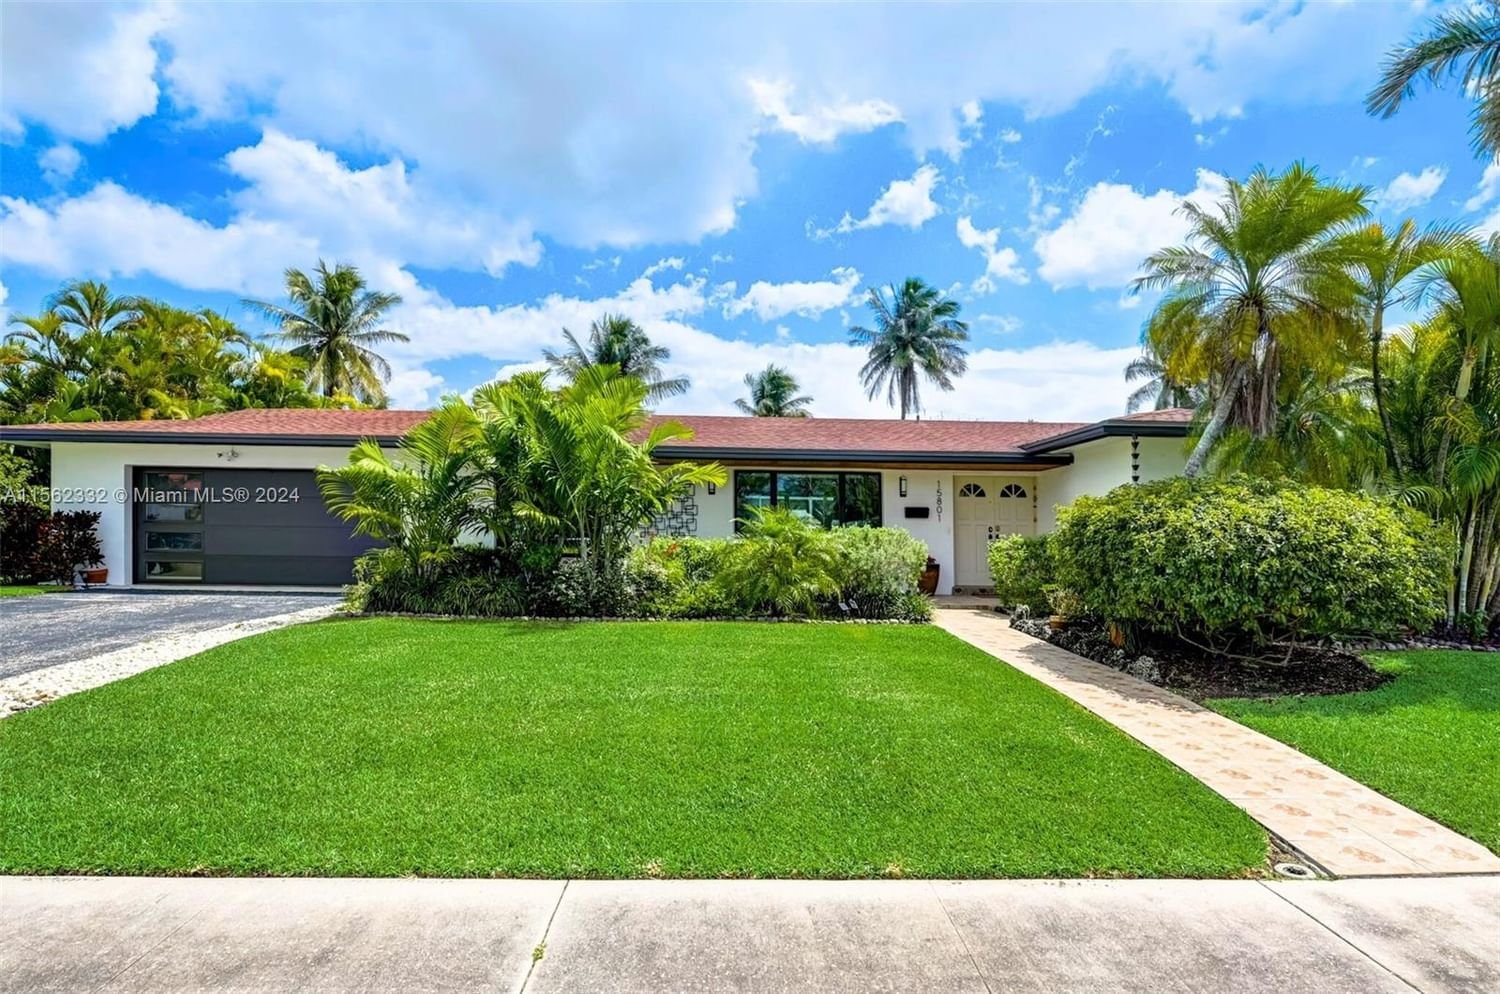 Real estate property located at 15801 Palmetto Club Dr, Miami-Dade County, PALMETTO COUNTRY CLUB ESTS, Miami, FL